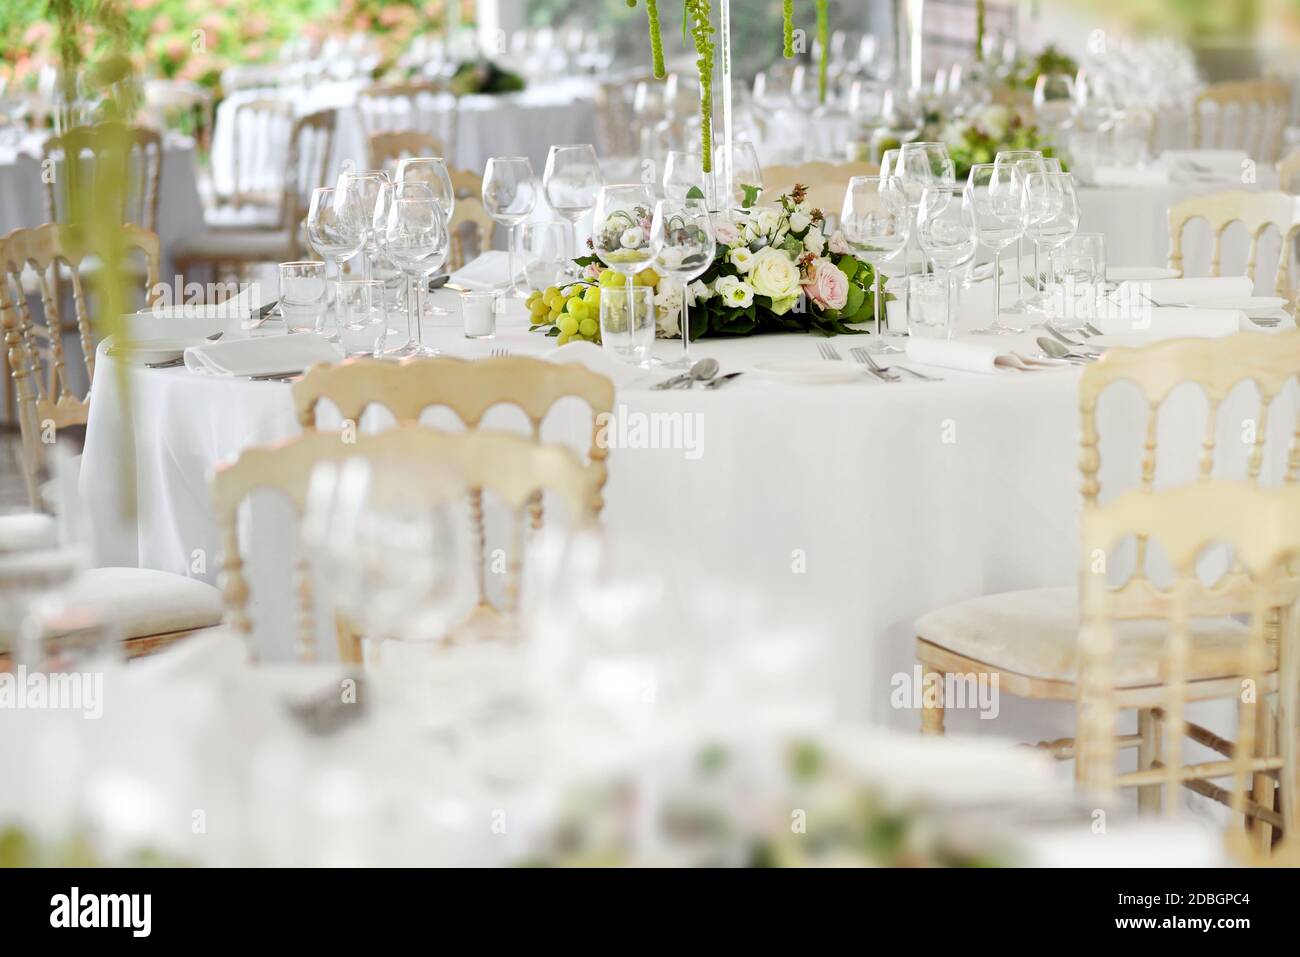 Cadre formel dans un lieu de mariage avec chaises blanches élégantes, verres élégants et couverts autour de pièces florales avec foyer sélectif t Banque D'Images